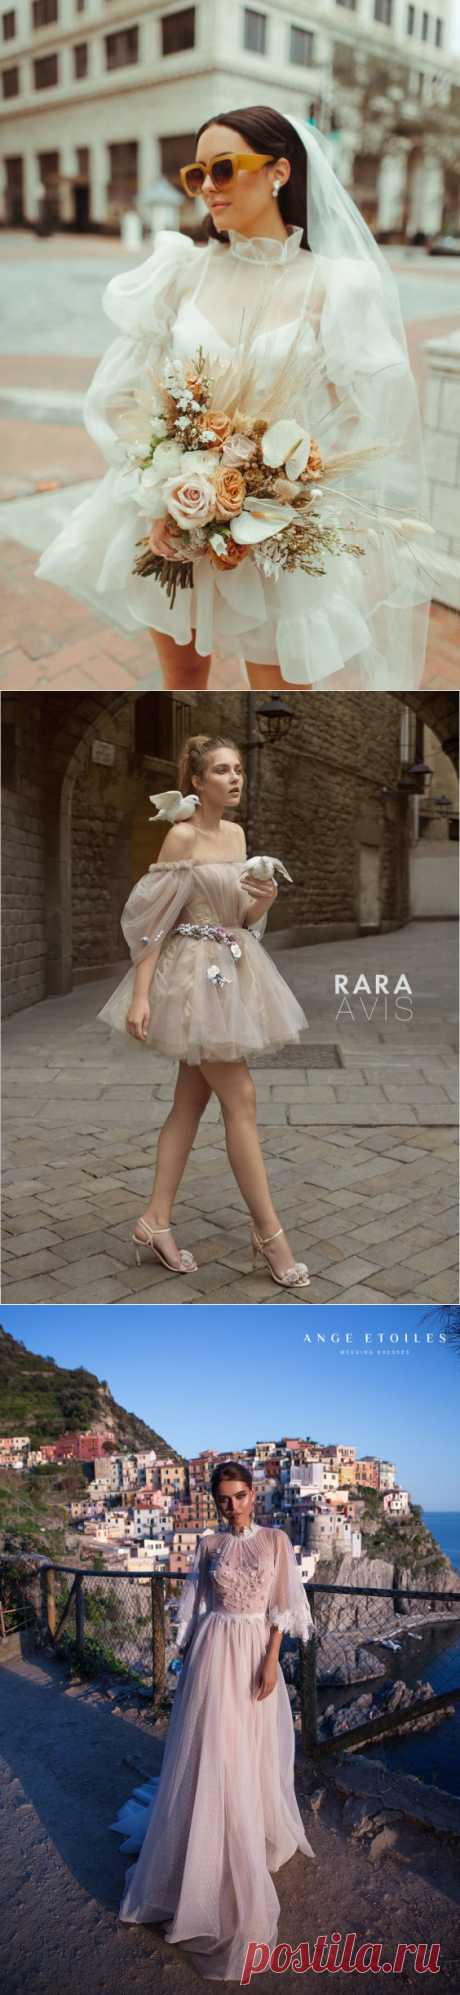 2021 Trend Spring Wedding Dress Ideas | Ferbena.com | Fashion Blog &amp; Magazine